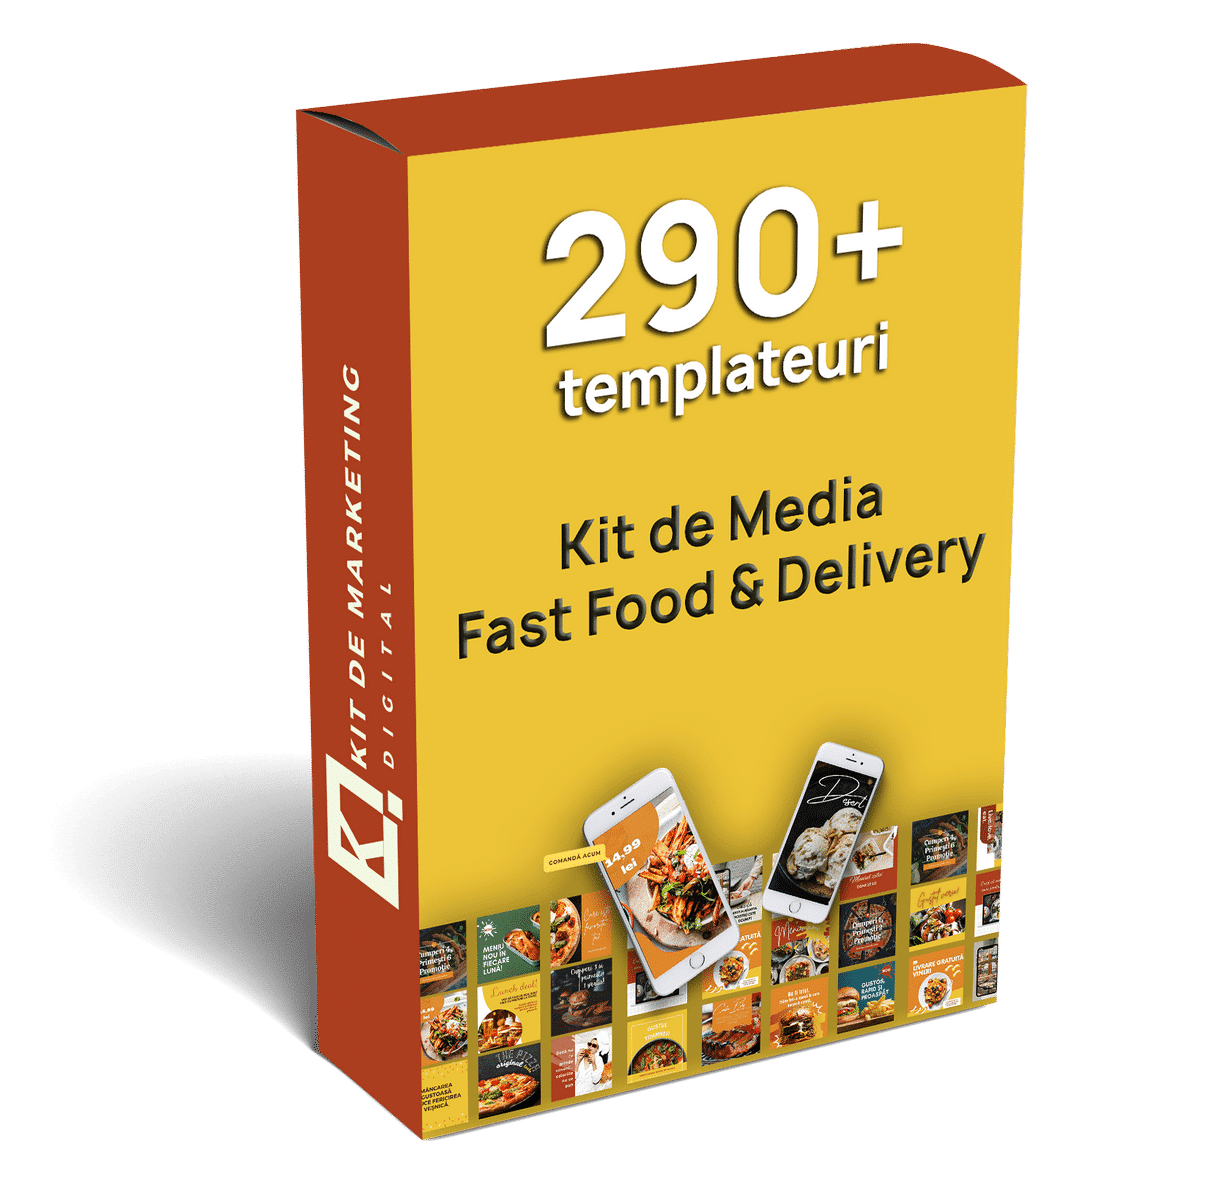 Kit de Media Fast Food & Delivery